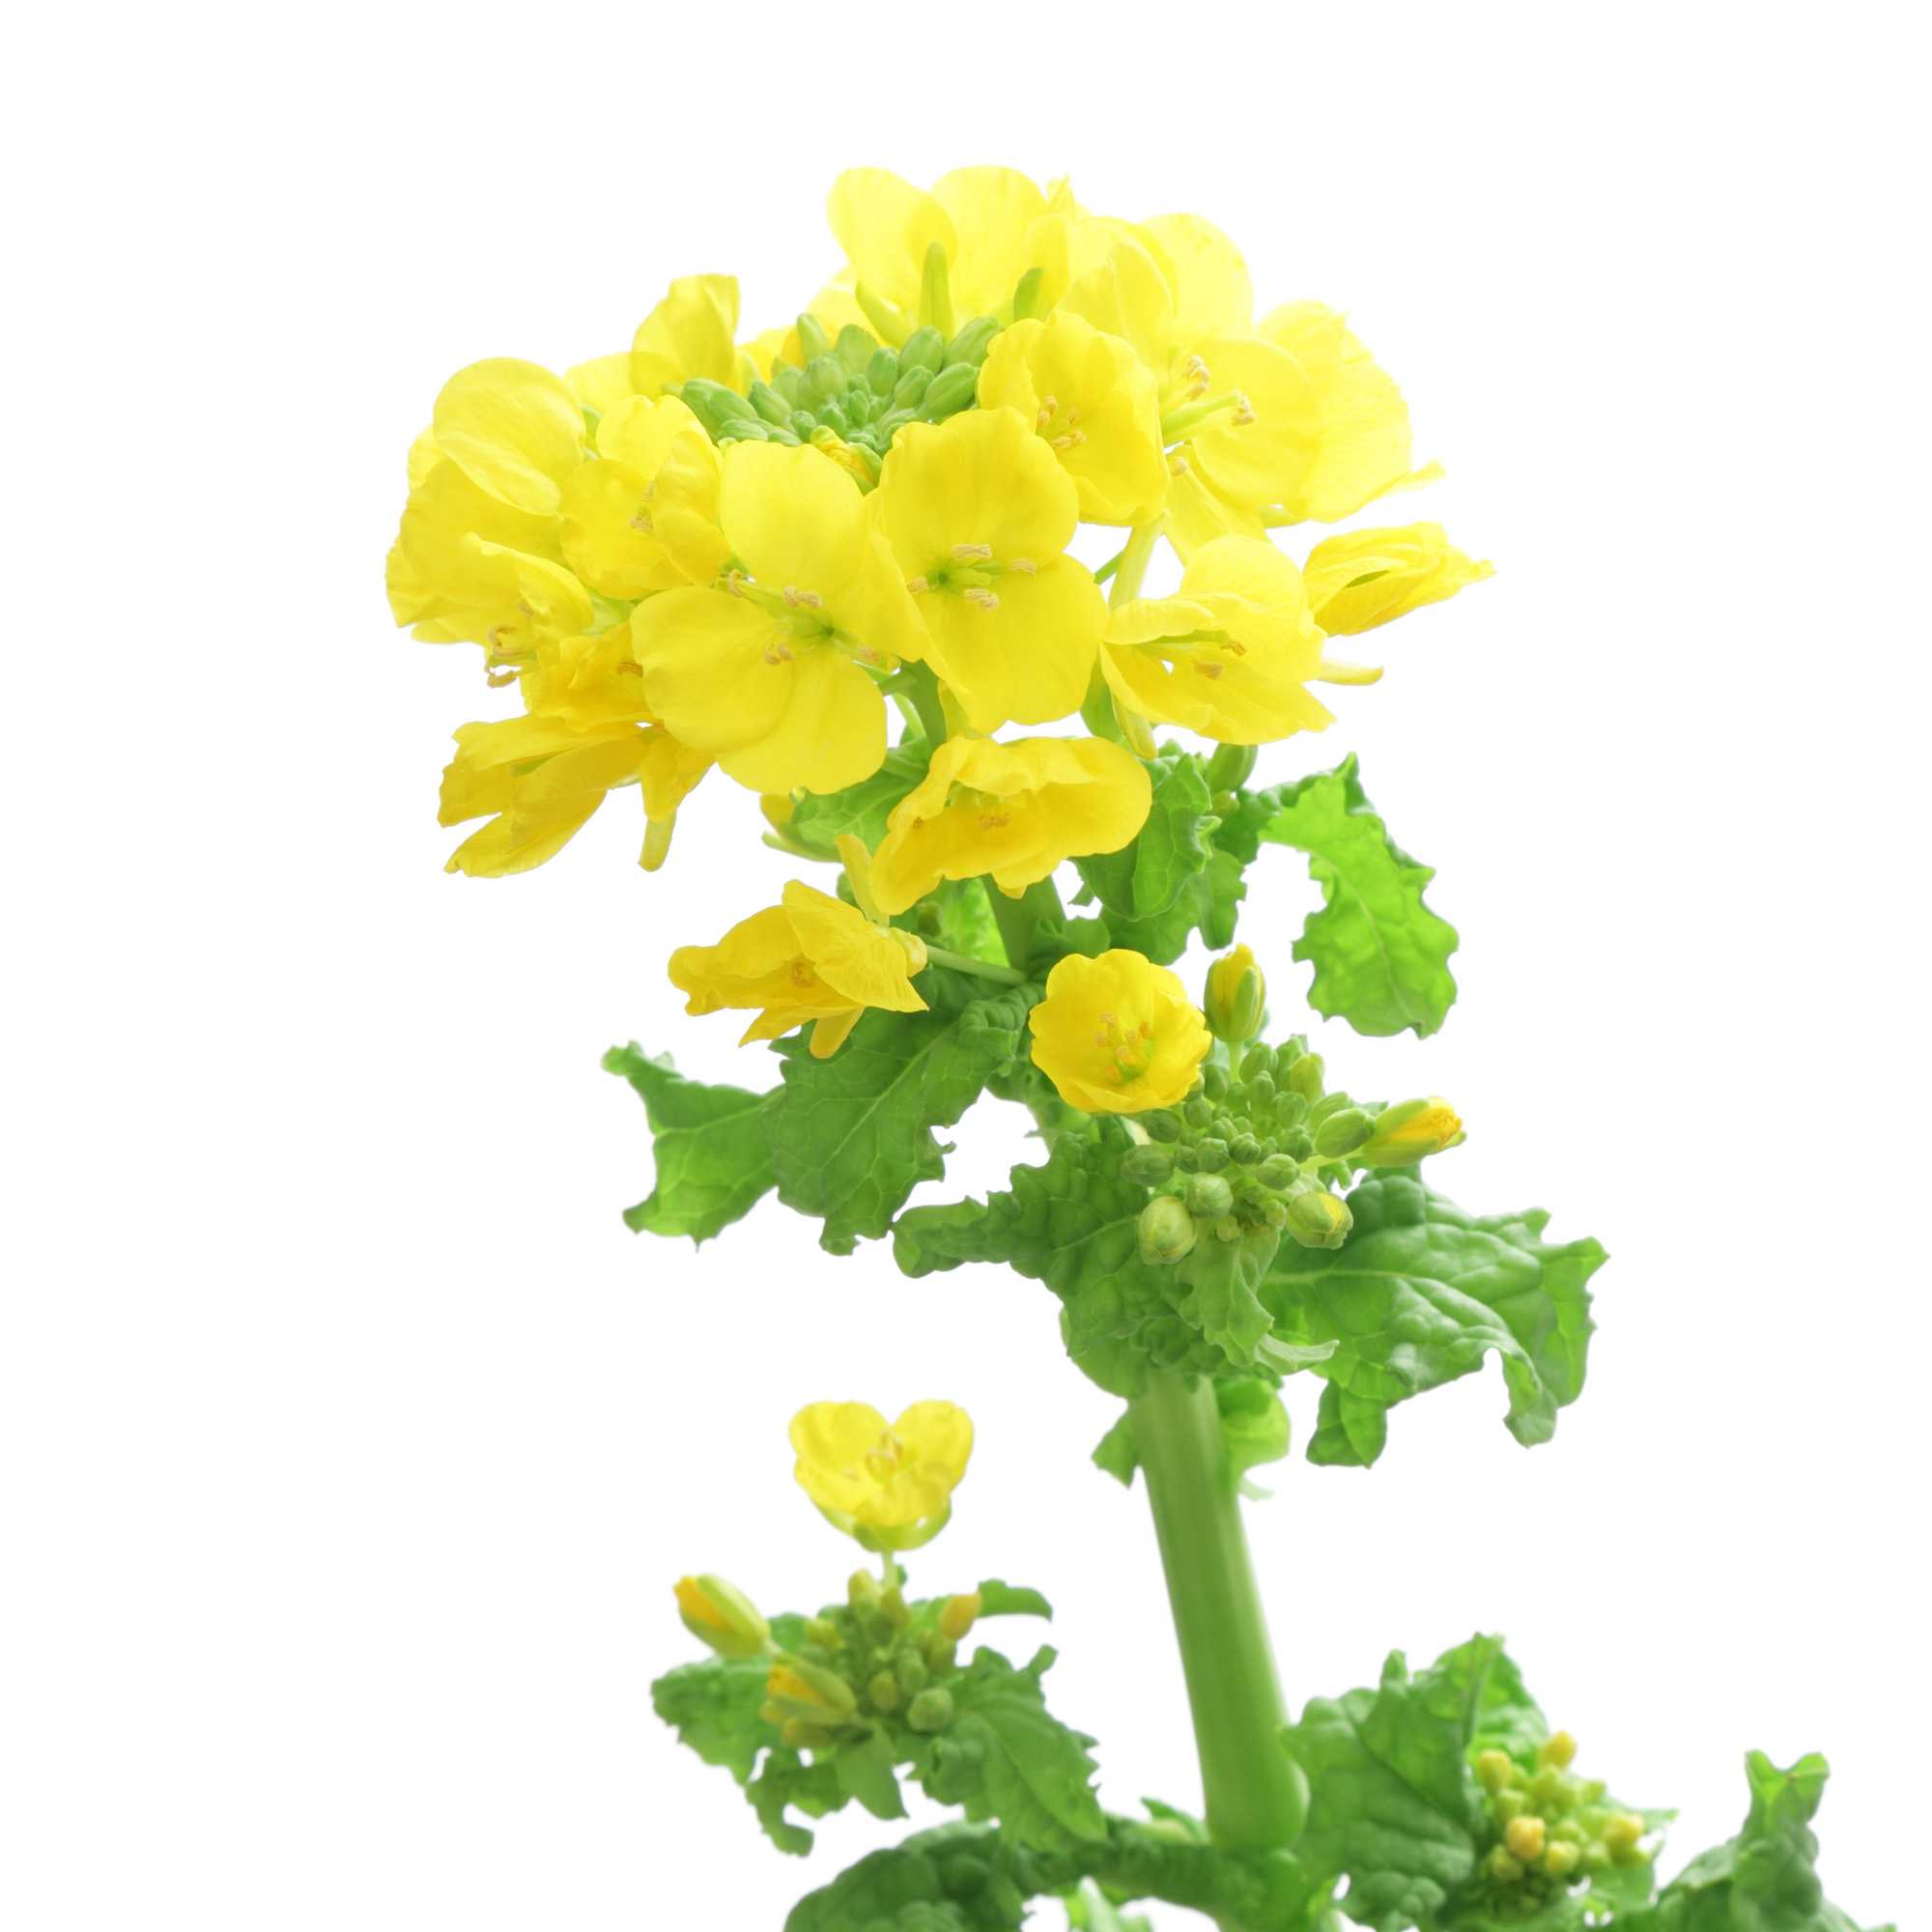 Dwarf Essex Rape Yellow Flowers